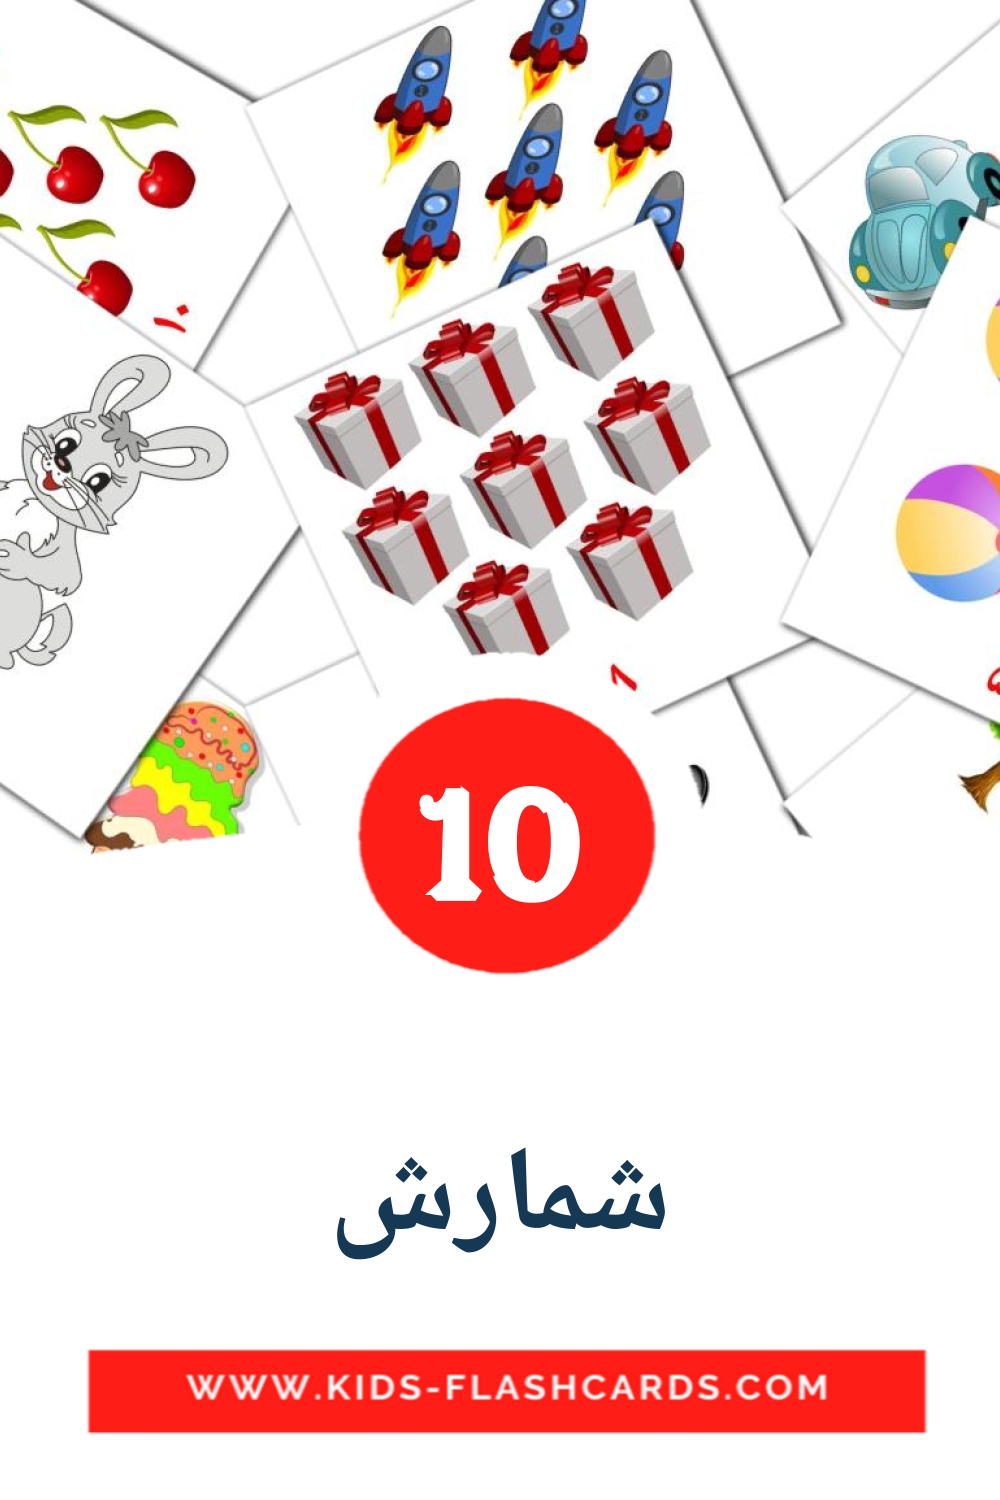 10 Cartões com Imagens de شمارش para Jardim de Infância em persa